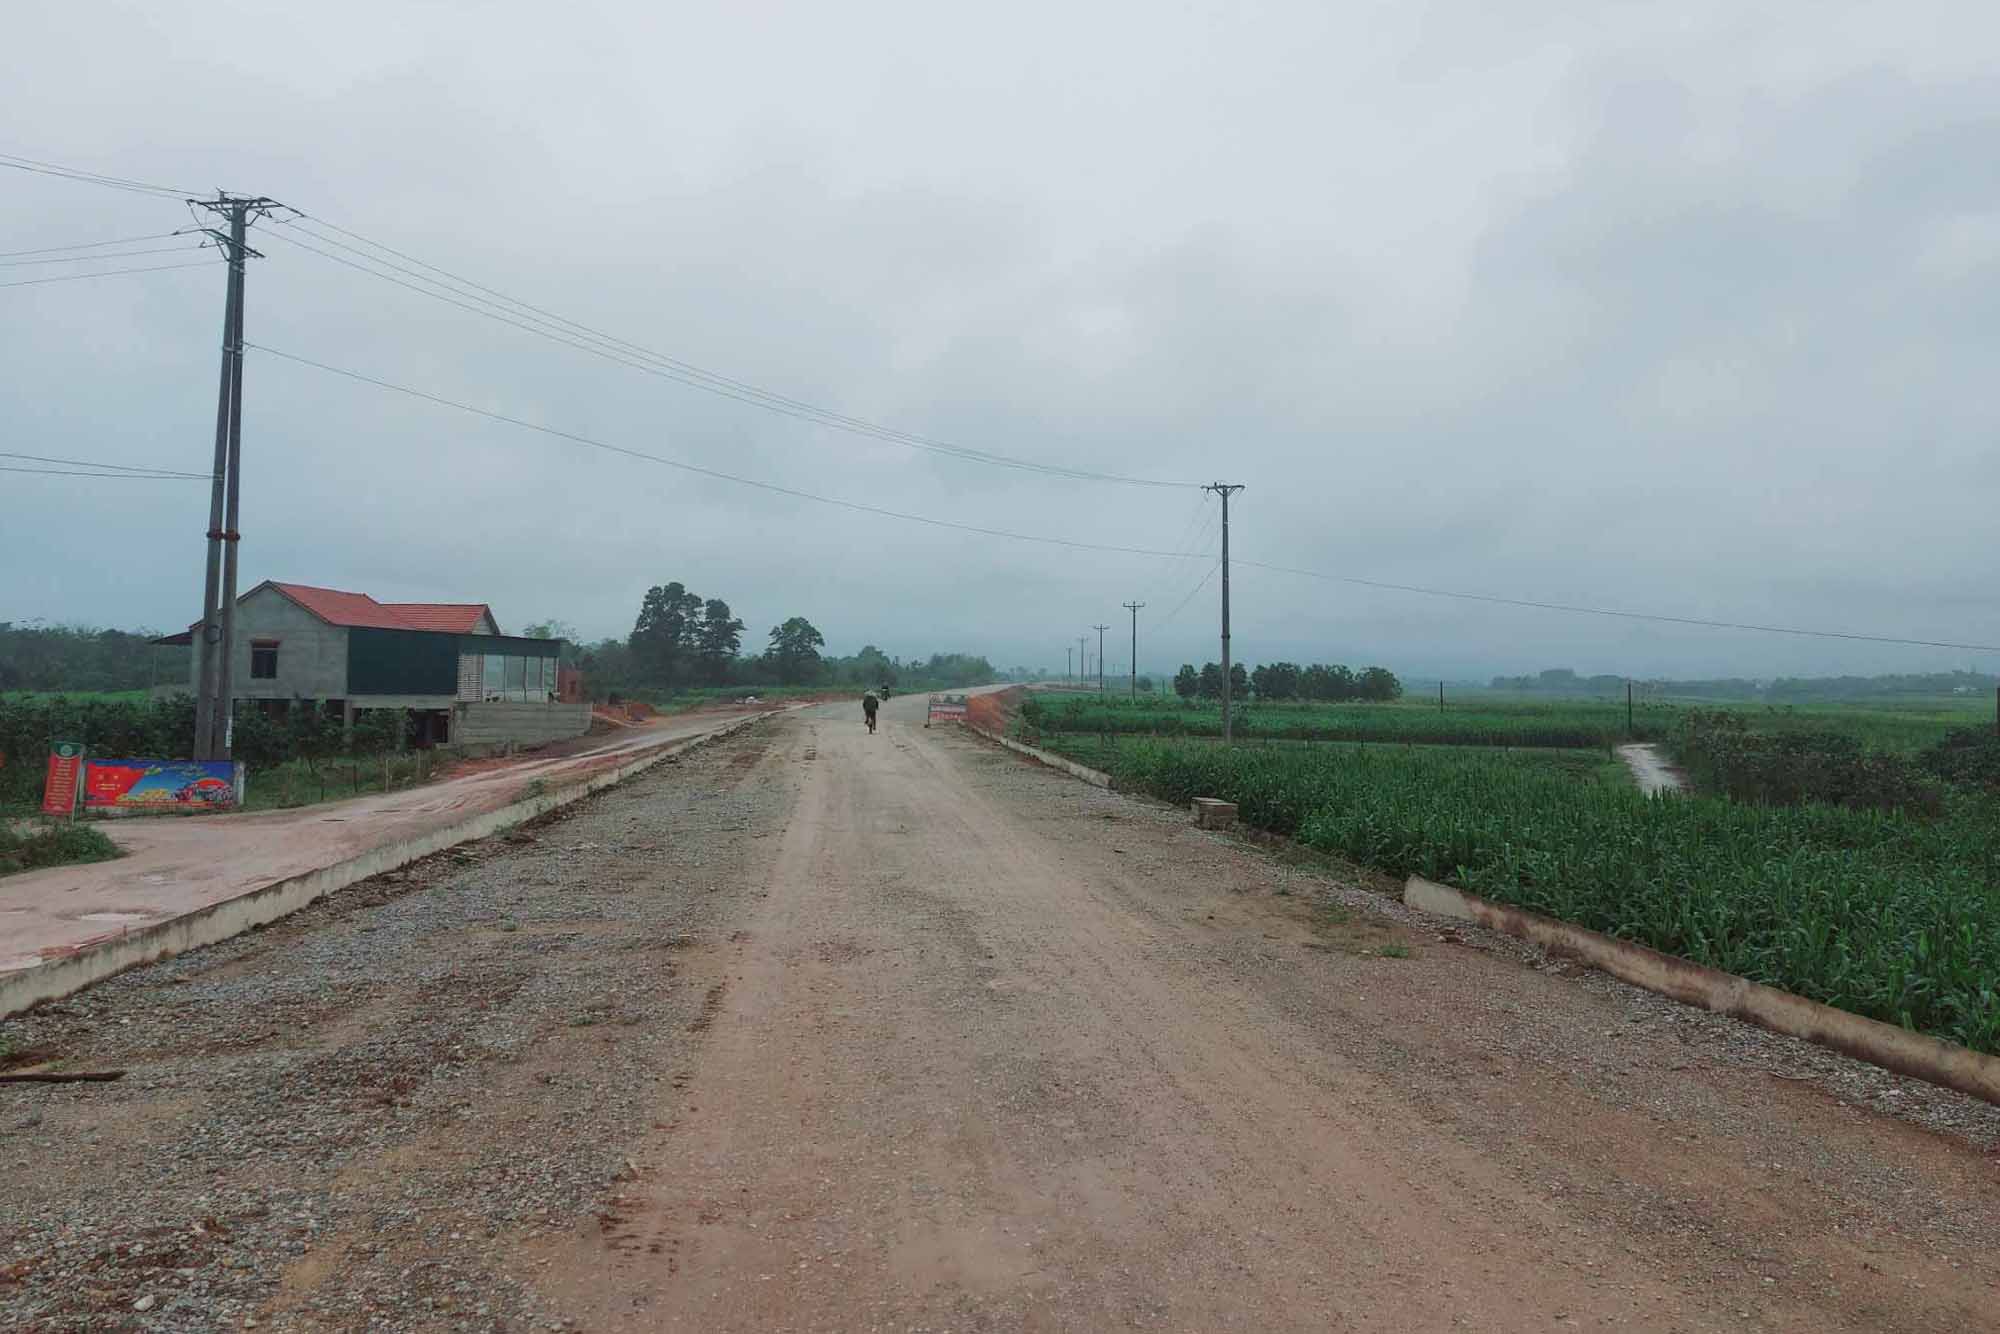 Dự án đường ĐT.553 ở Hương Khê trước đó bị phê bình vì chậm triển khai. Ảnh: Trần Tuấn.